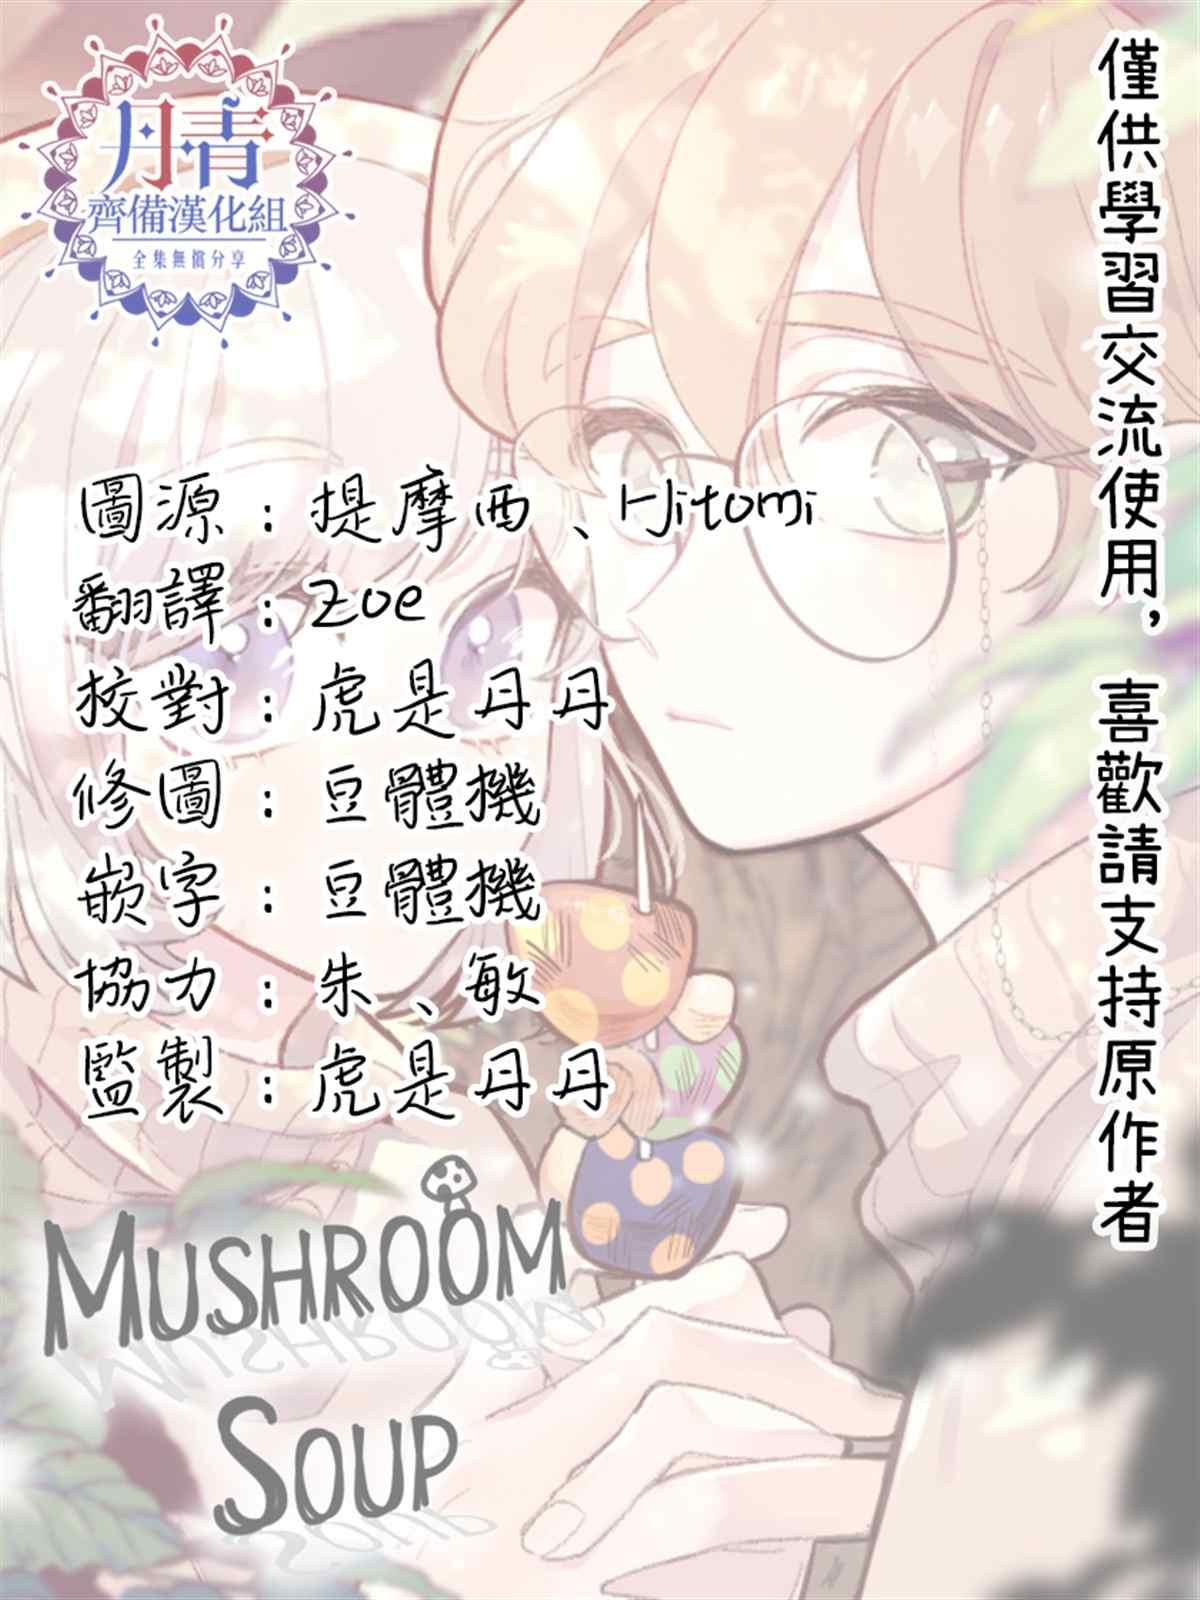 蘑菇湯 - 03 混血 - 2